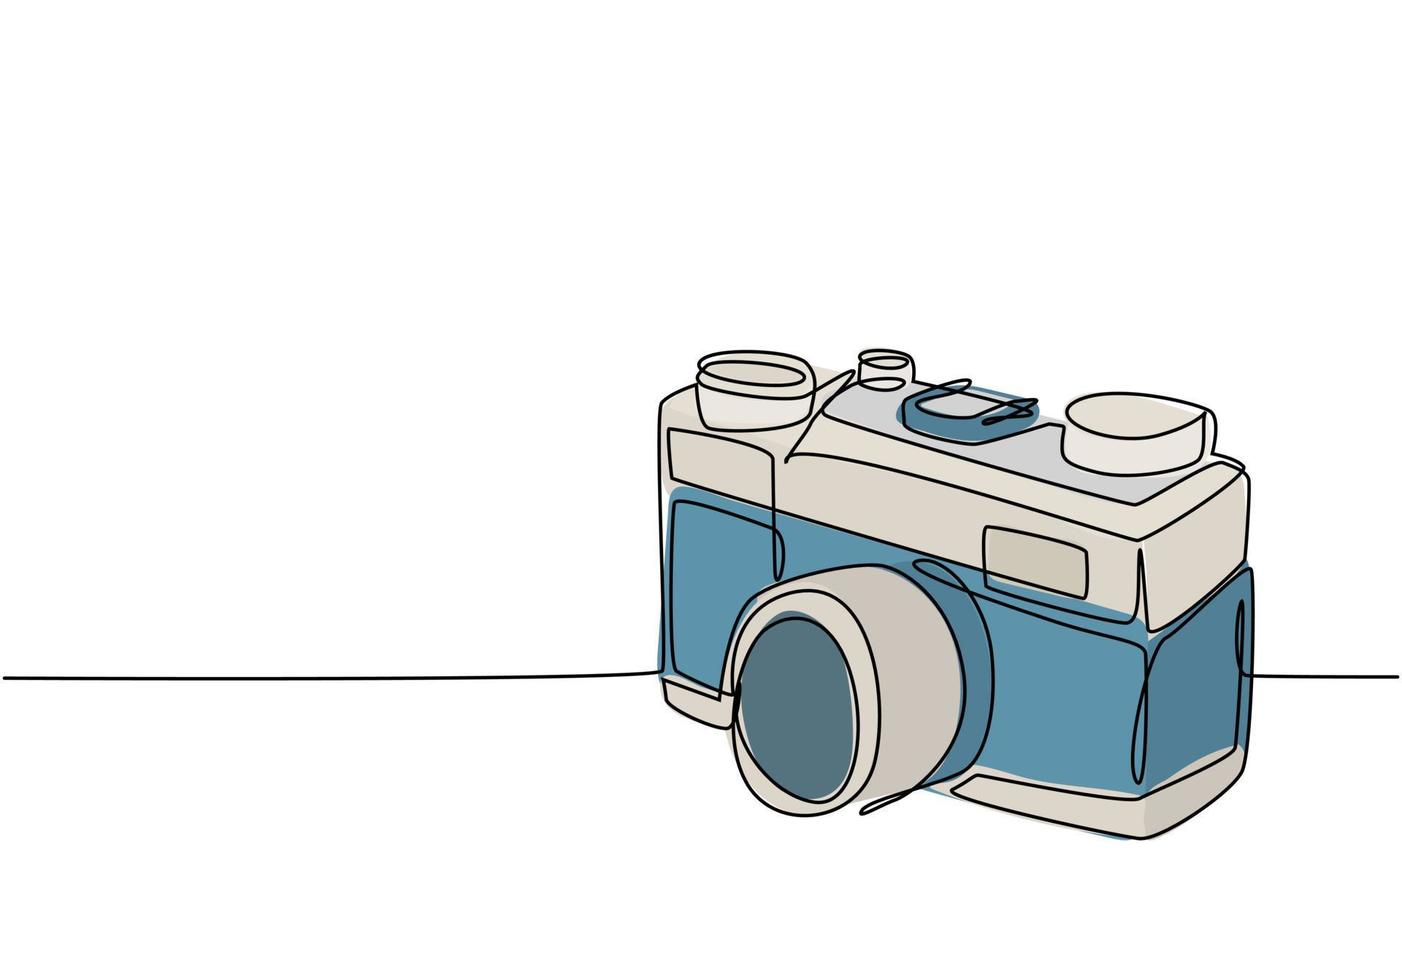 un disegno a linea continua di una vecchia fotocamera tascabile analogica vintage, vista laterale. concetto di attrezzatura fotografica retrò classico concetto di disegno grafico a linea singola illustrazione vettoriale